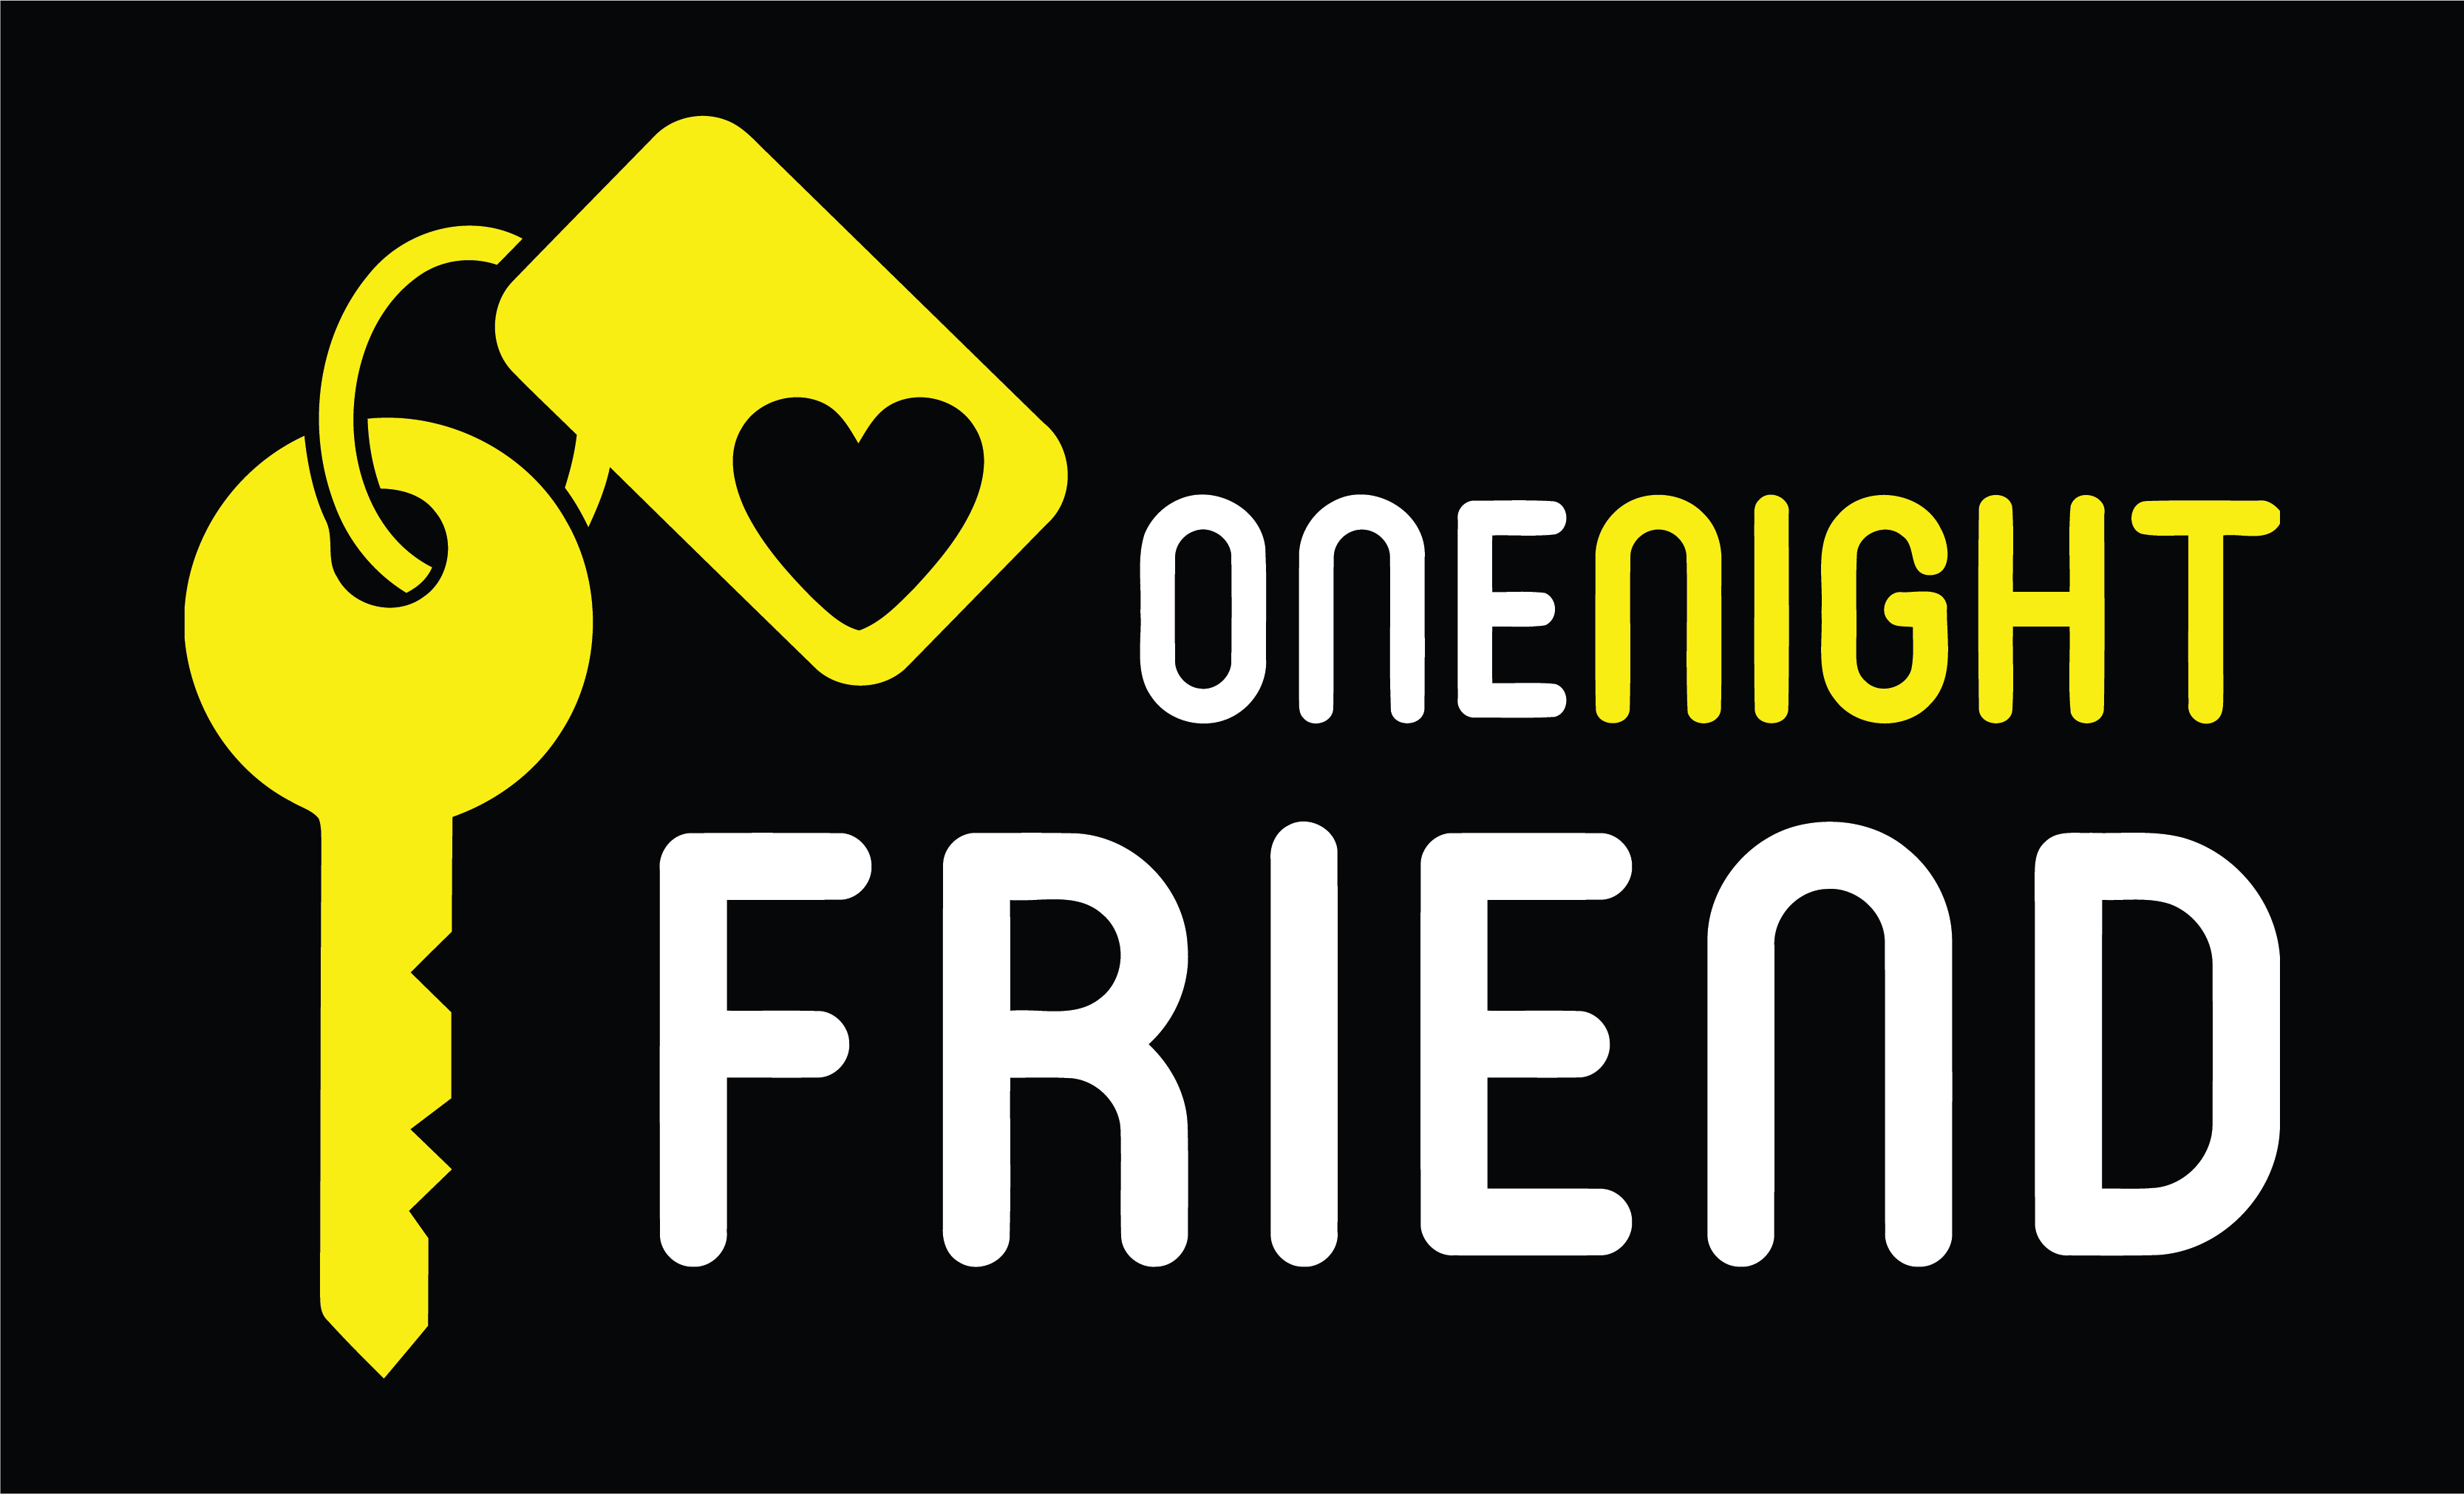 OneNightFriend Review